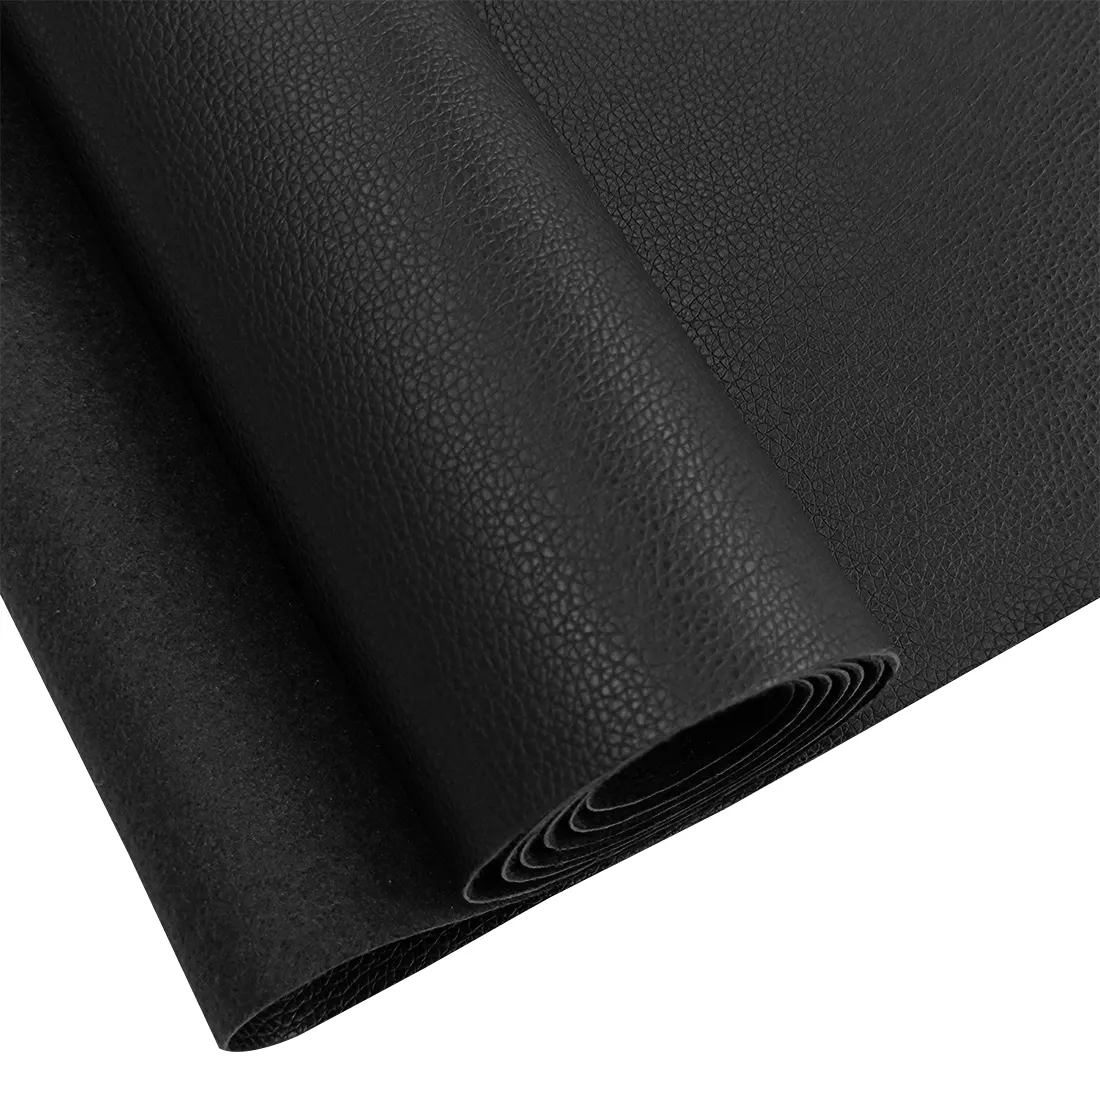 17.7x53 इंच काले अशुद्ध चमड़े कपड़े नरम Vinyl असबाब कपड़े सामग्री चमड़े के फर्नीचर बनाने के लिए एकदम सही सजावट